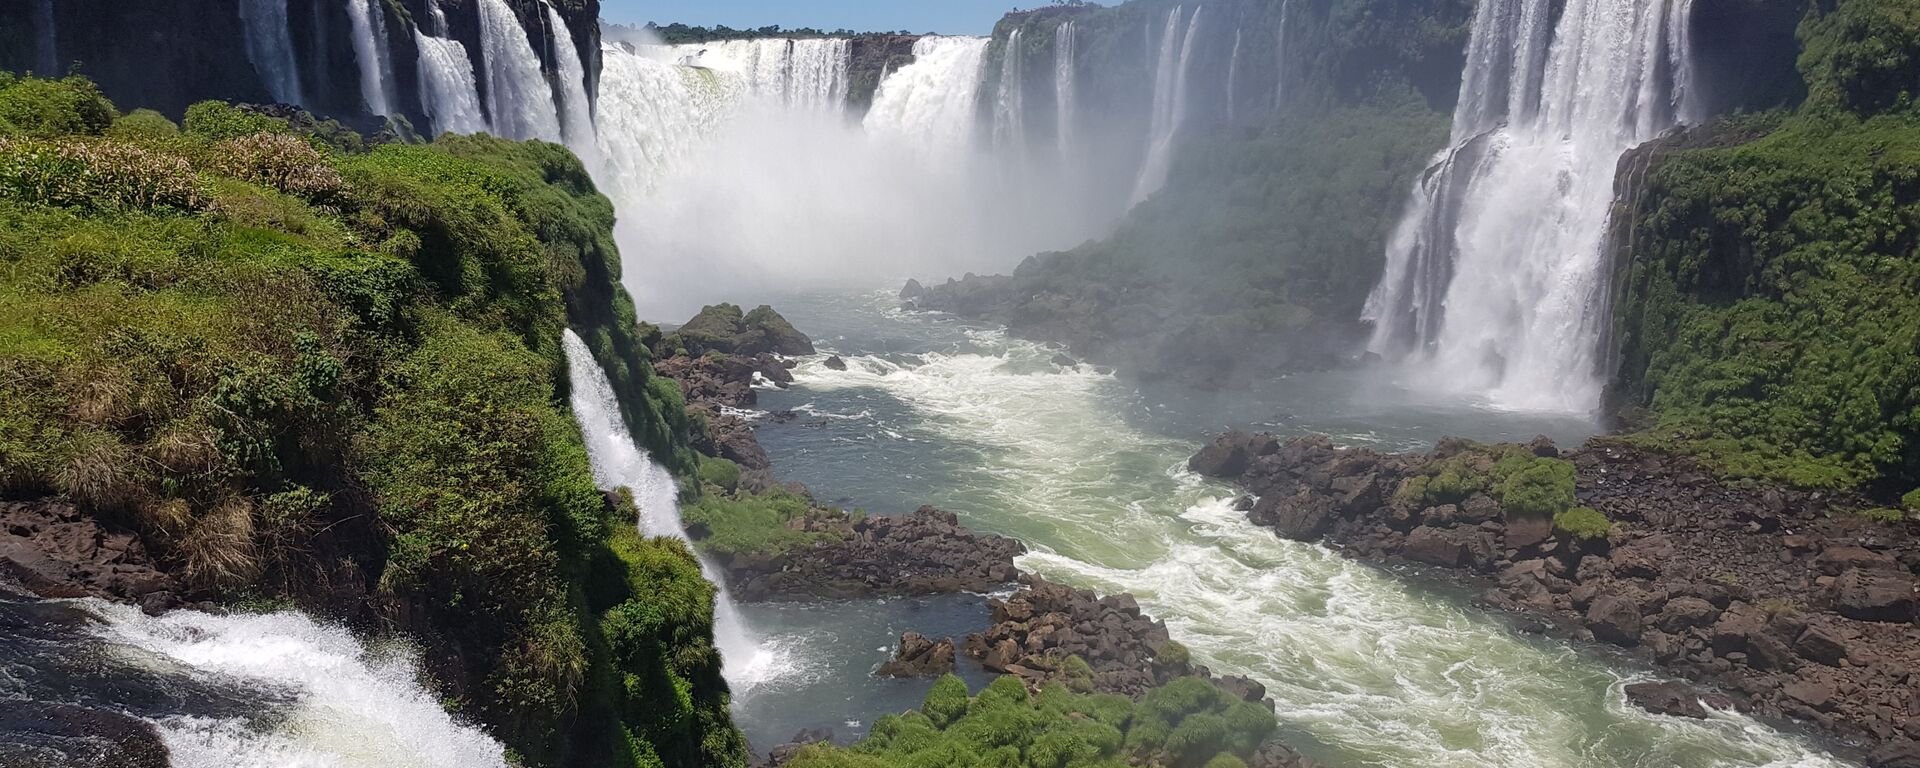 Las Cataratas del Iguazú - Sputnik Mundo, 1920, 27.08.2021